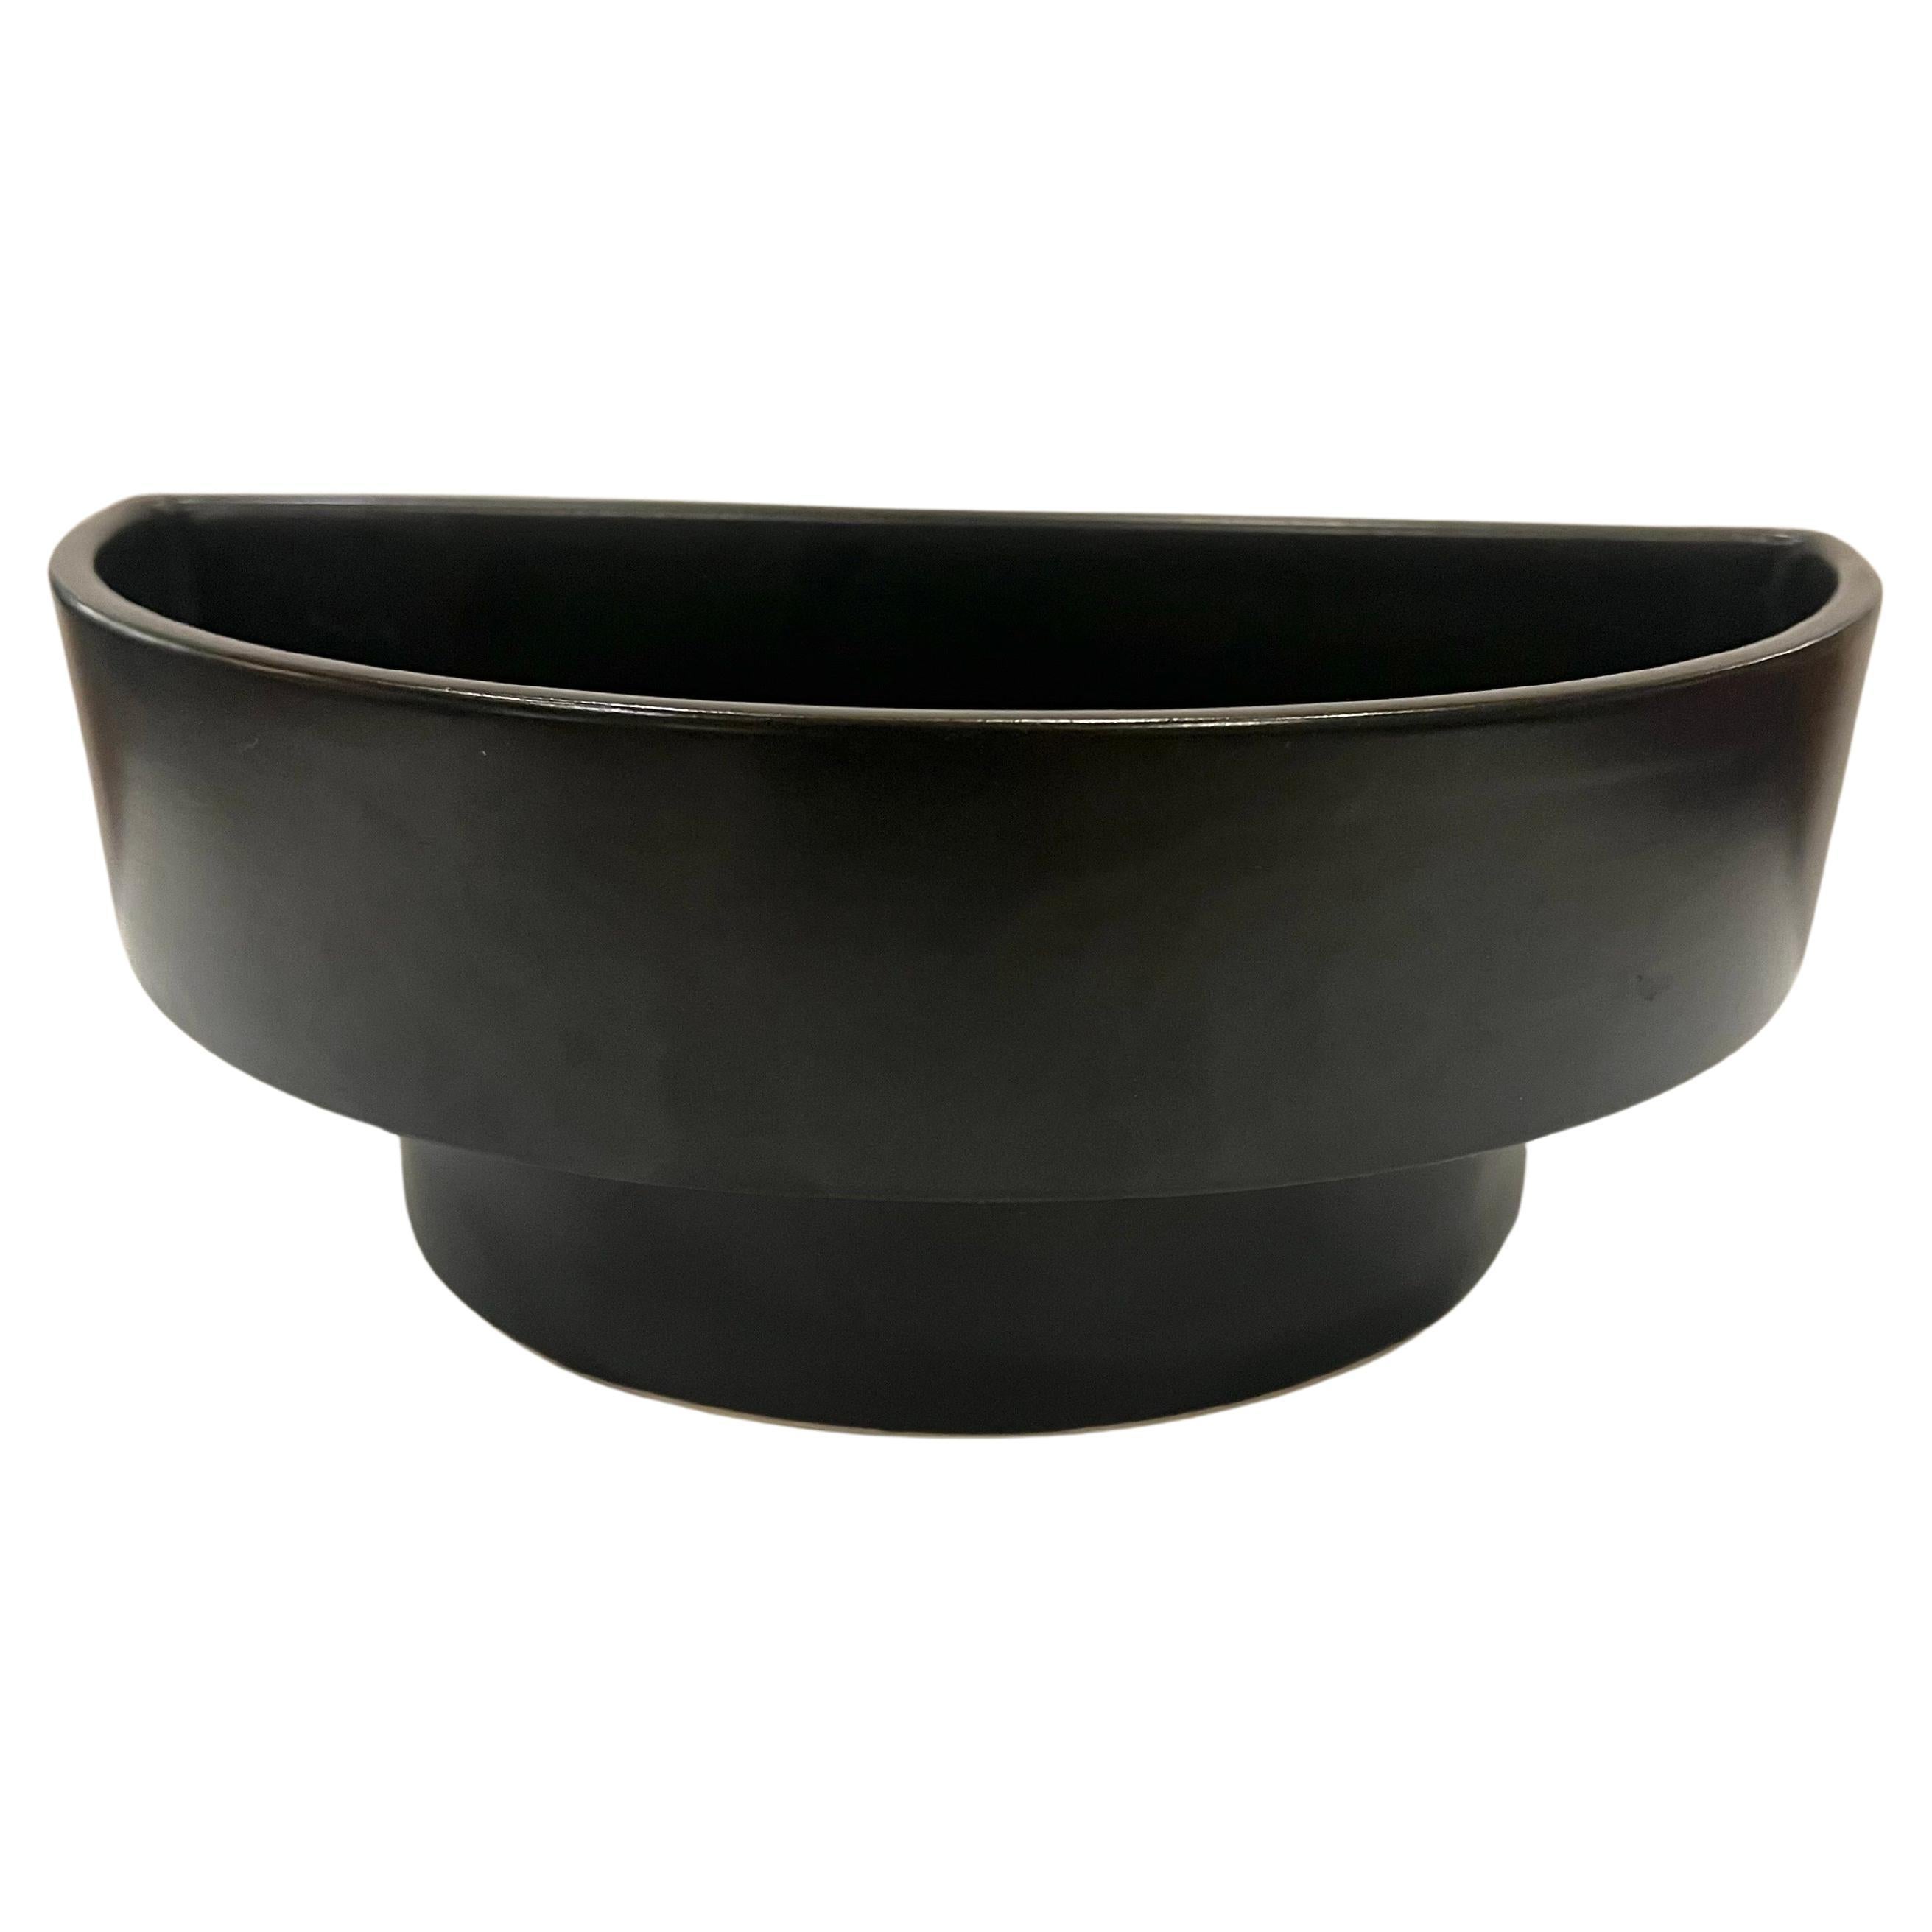 Paar schwarze Ikebana-Pflanzgefäße aus Keramik, in einem schwarzen Mate, Finish großes Design und Aussehen.